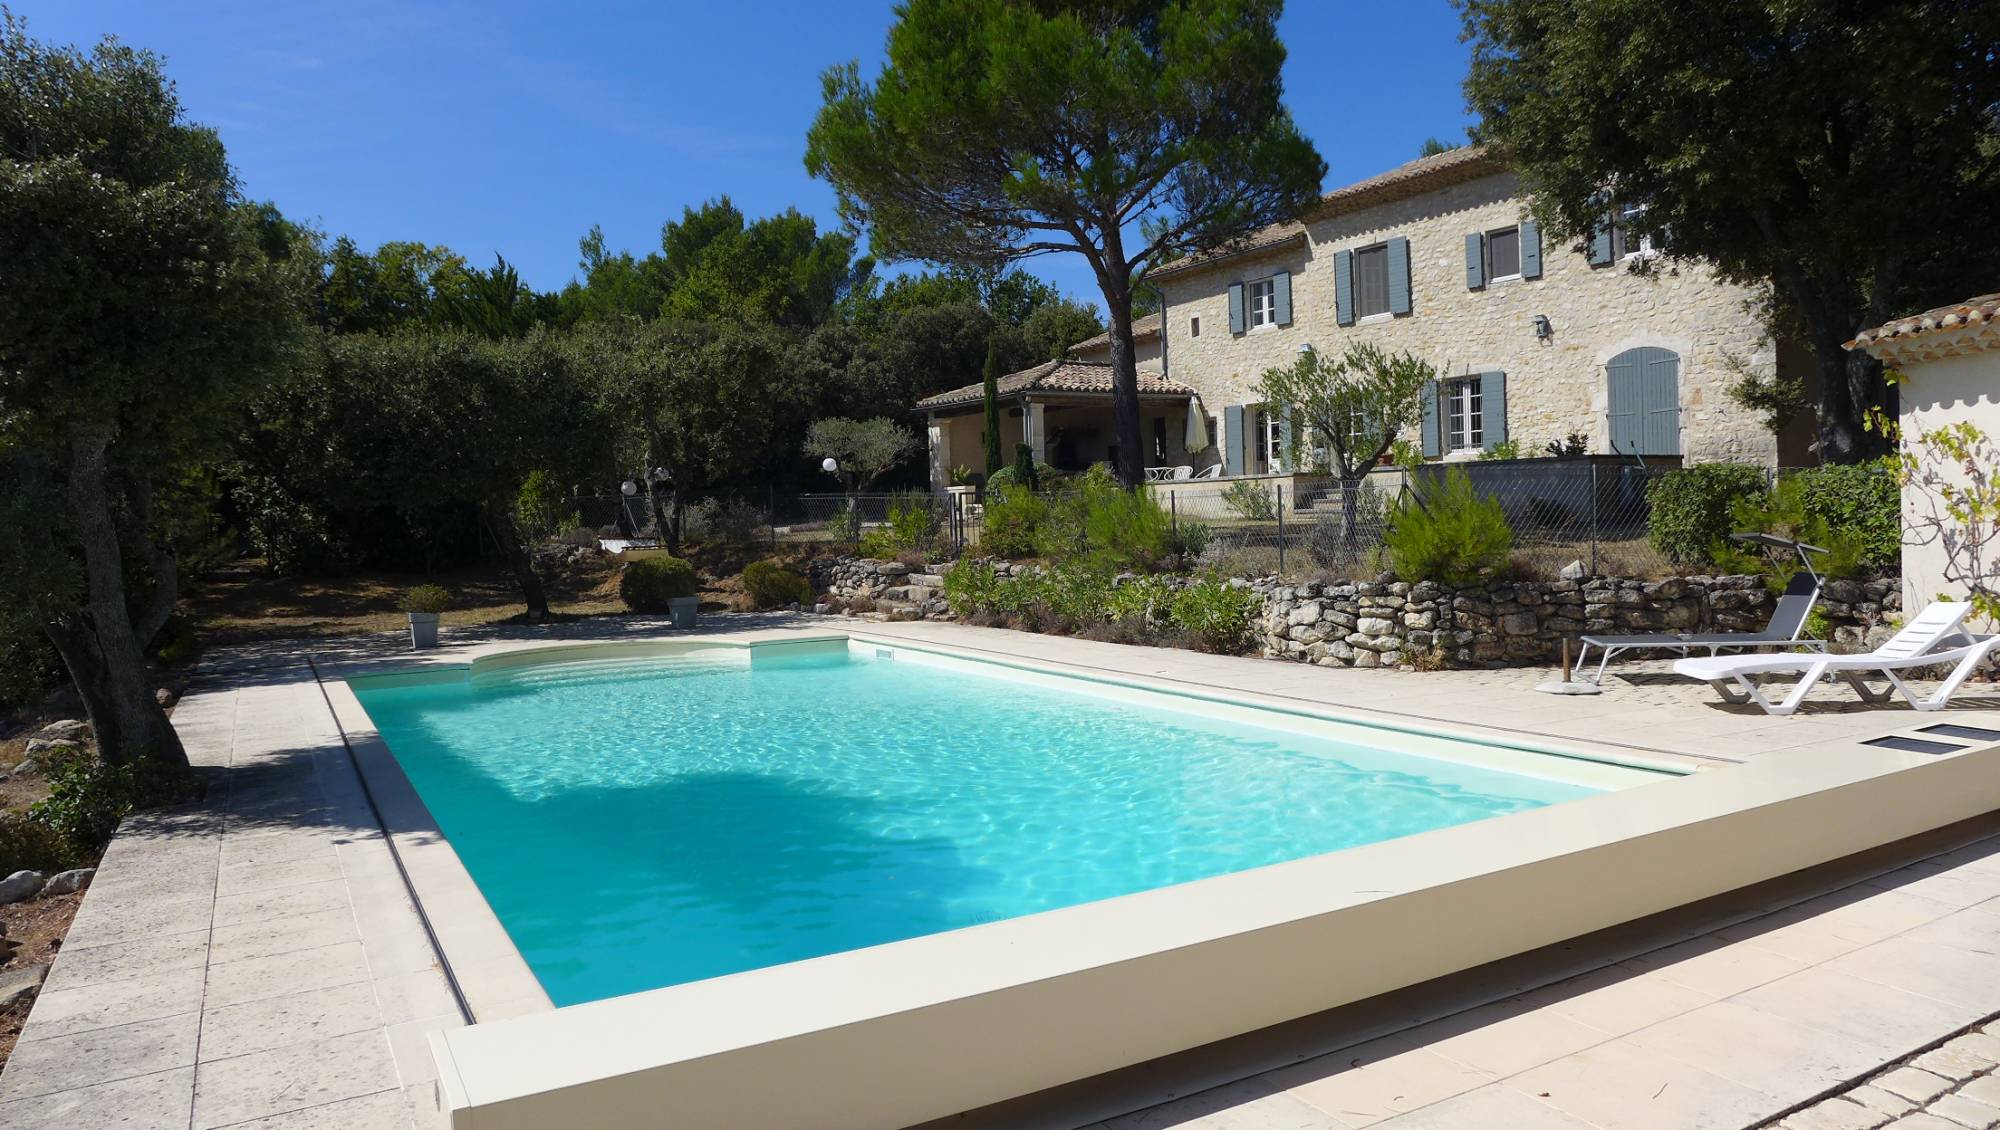 Location saisonnière en Drôme Provençale avec piscine